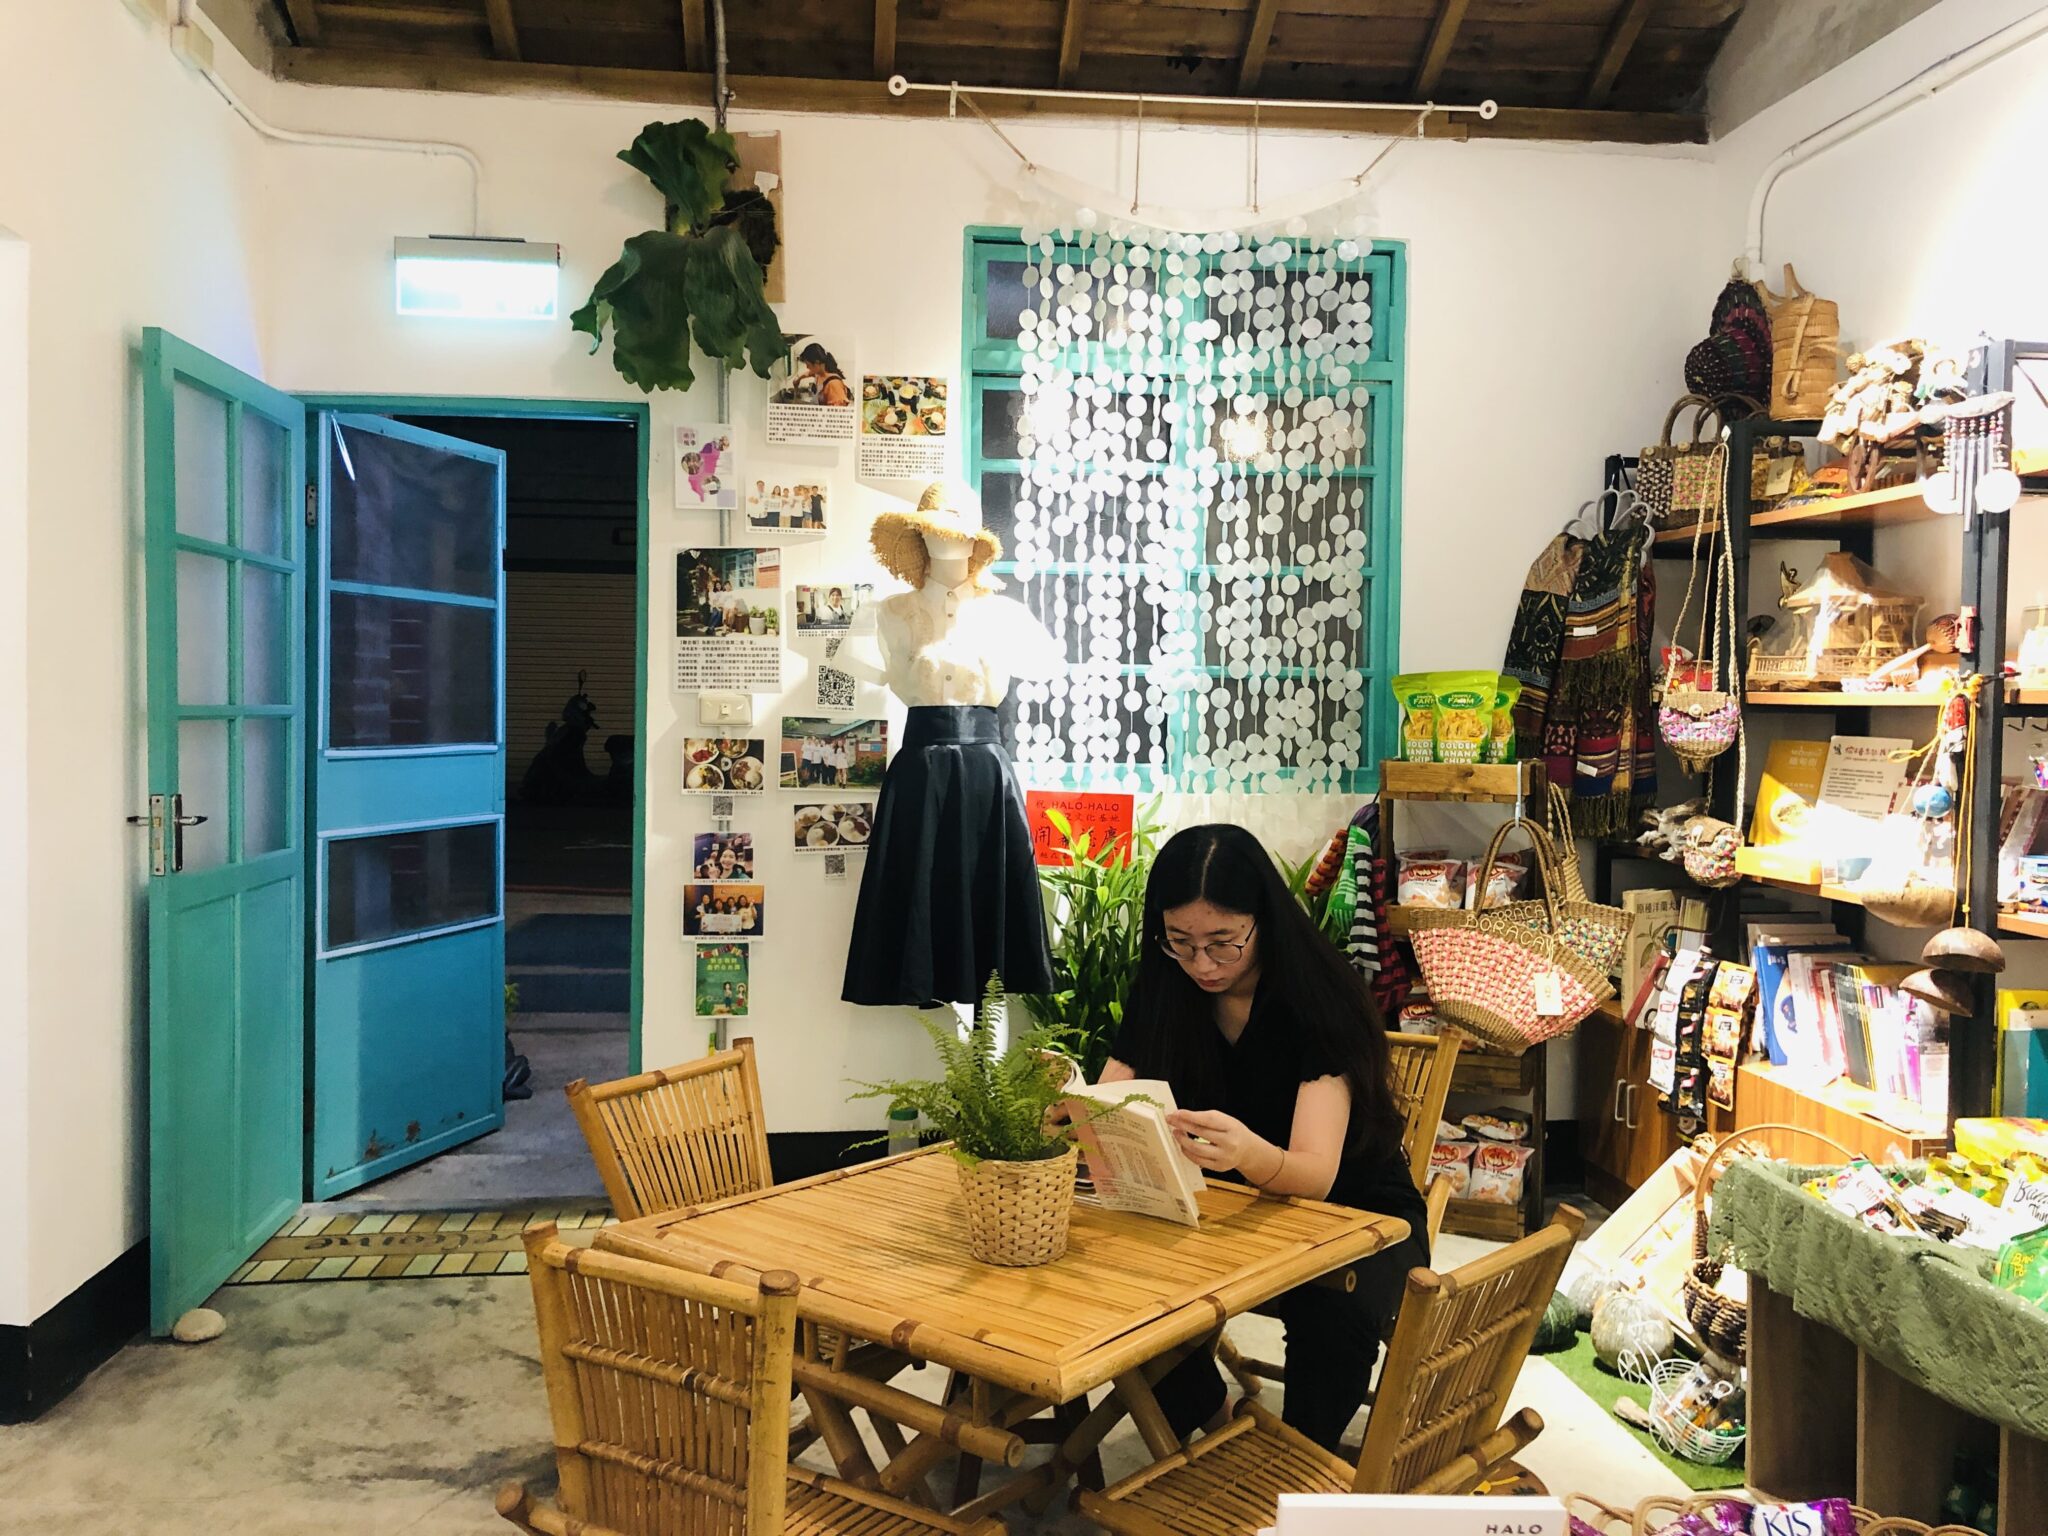 Không gian nội thất của nhà hàng mang đậm dấu ấn văn hóa Đài Loan và Philippines. (Nguồn ảnh: Nhân vật cung cấp)